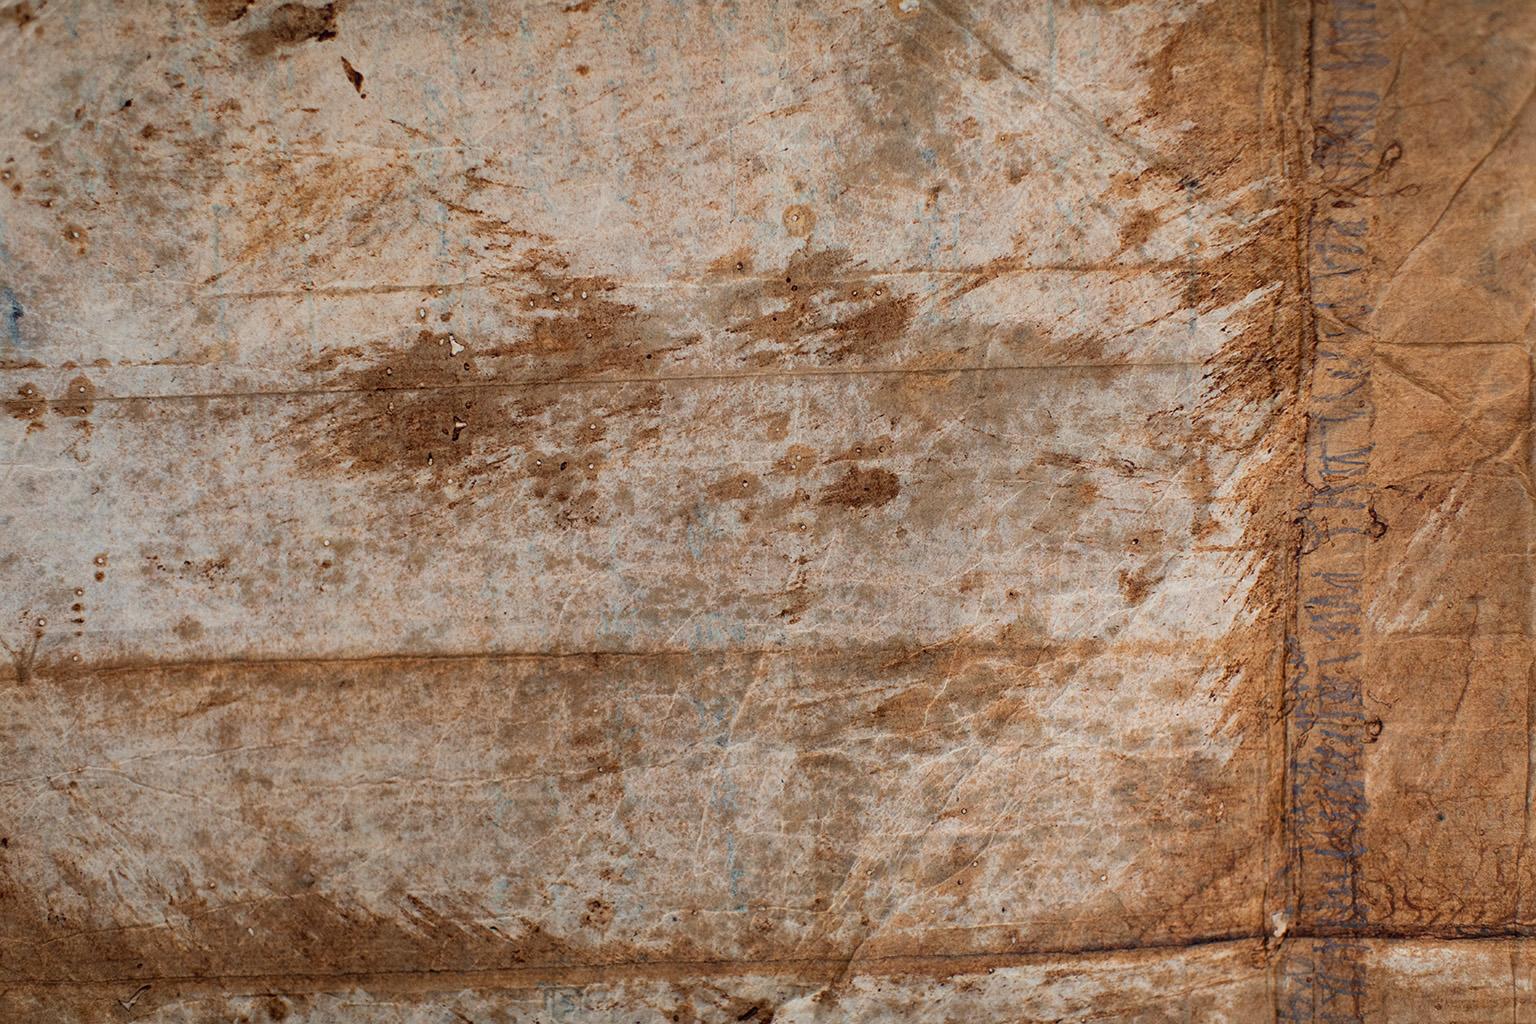 Zeitgenössische Kunst, Antike Textilien, Papierkunst, Textilien - Kuriositätenkabinett

A B O U T H I E S P I E K E :
Dieses 100 Jahre alte, ganzheitlich gefärbte Papier wurde im alten Japan zum Einwickeln von Textilien verwendet.

Dieses